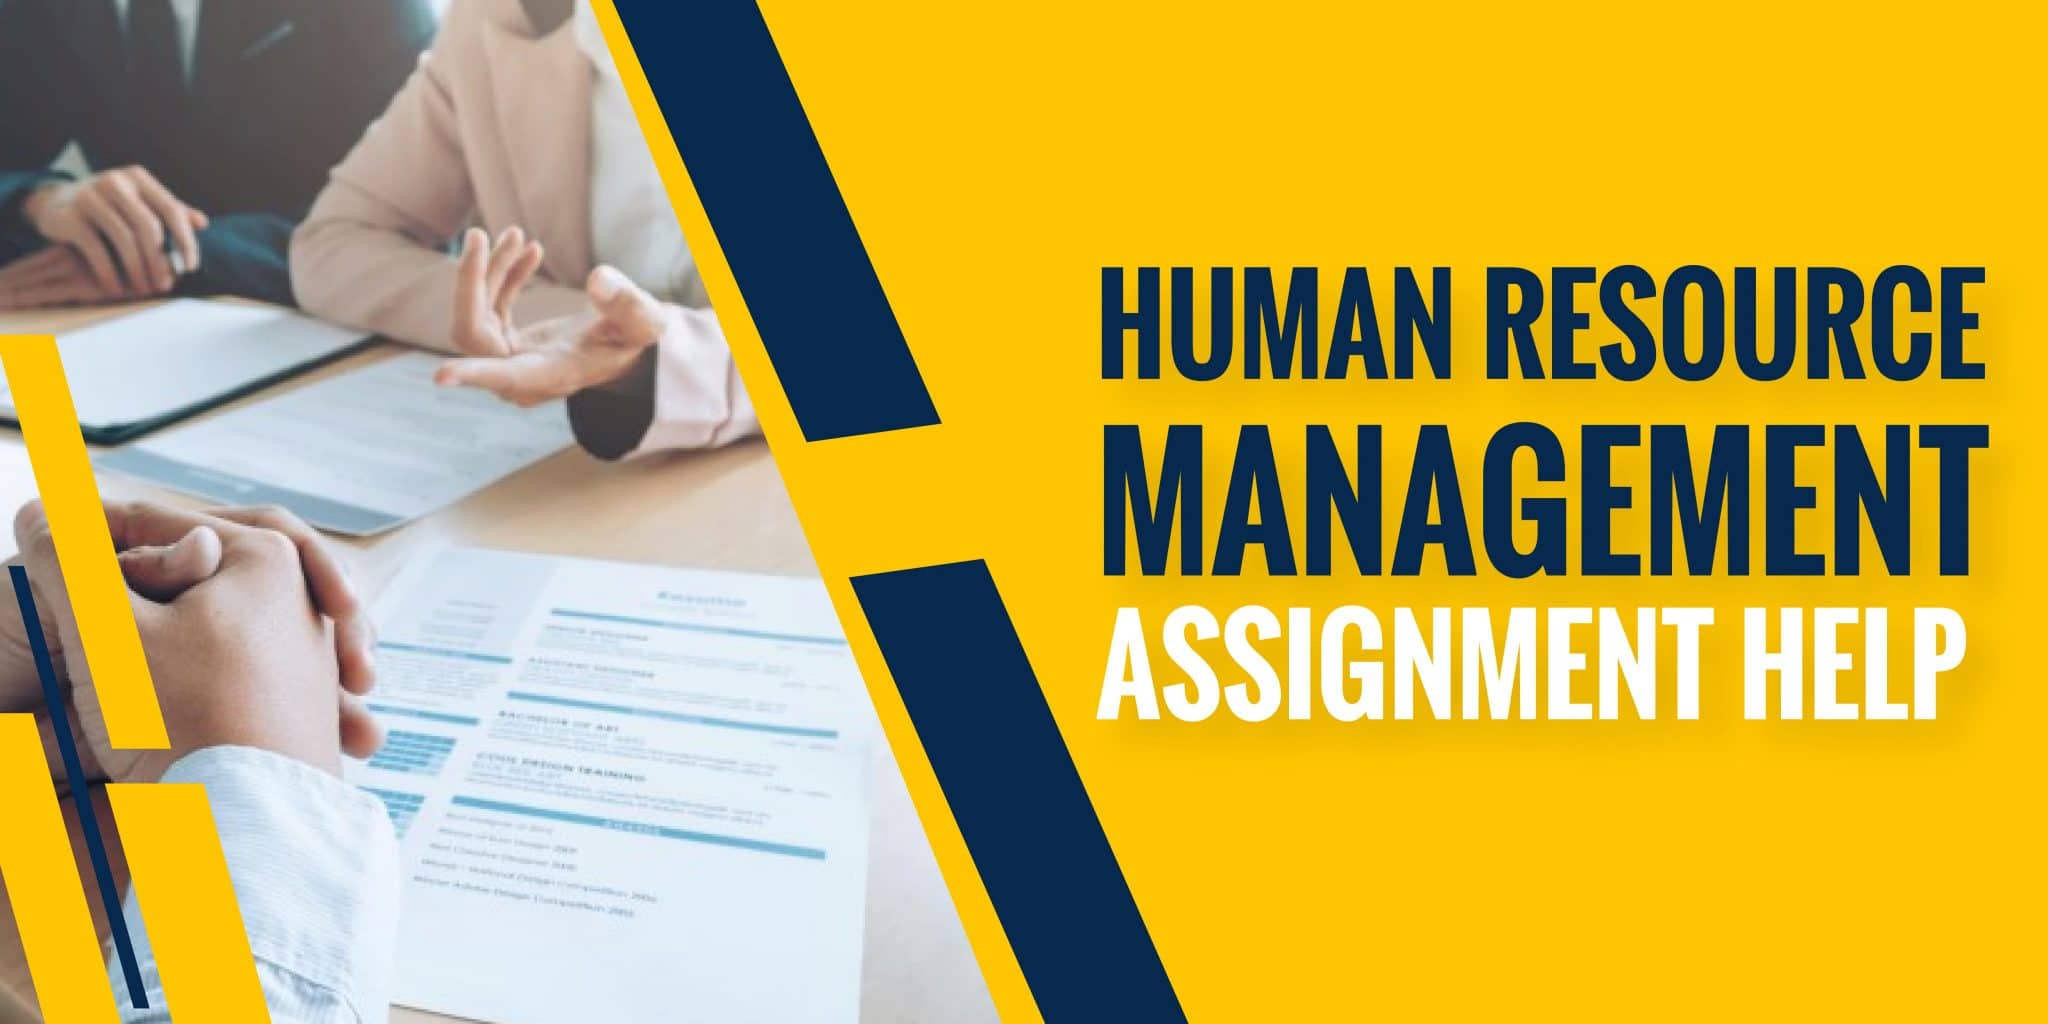 Human Resource Management Assignment Help